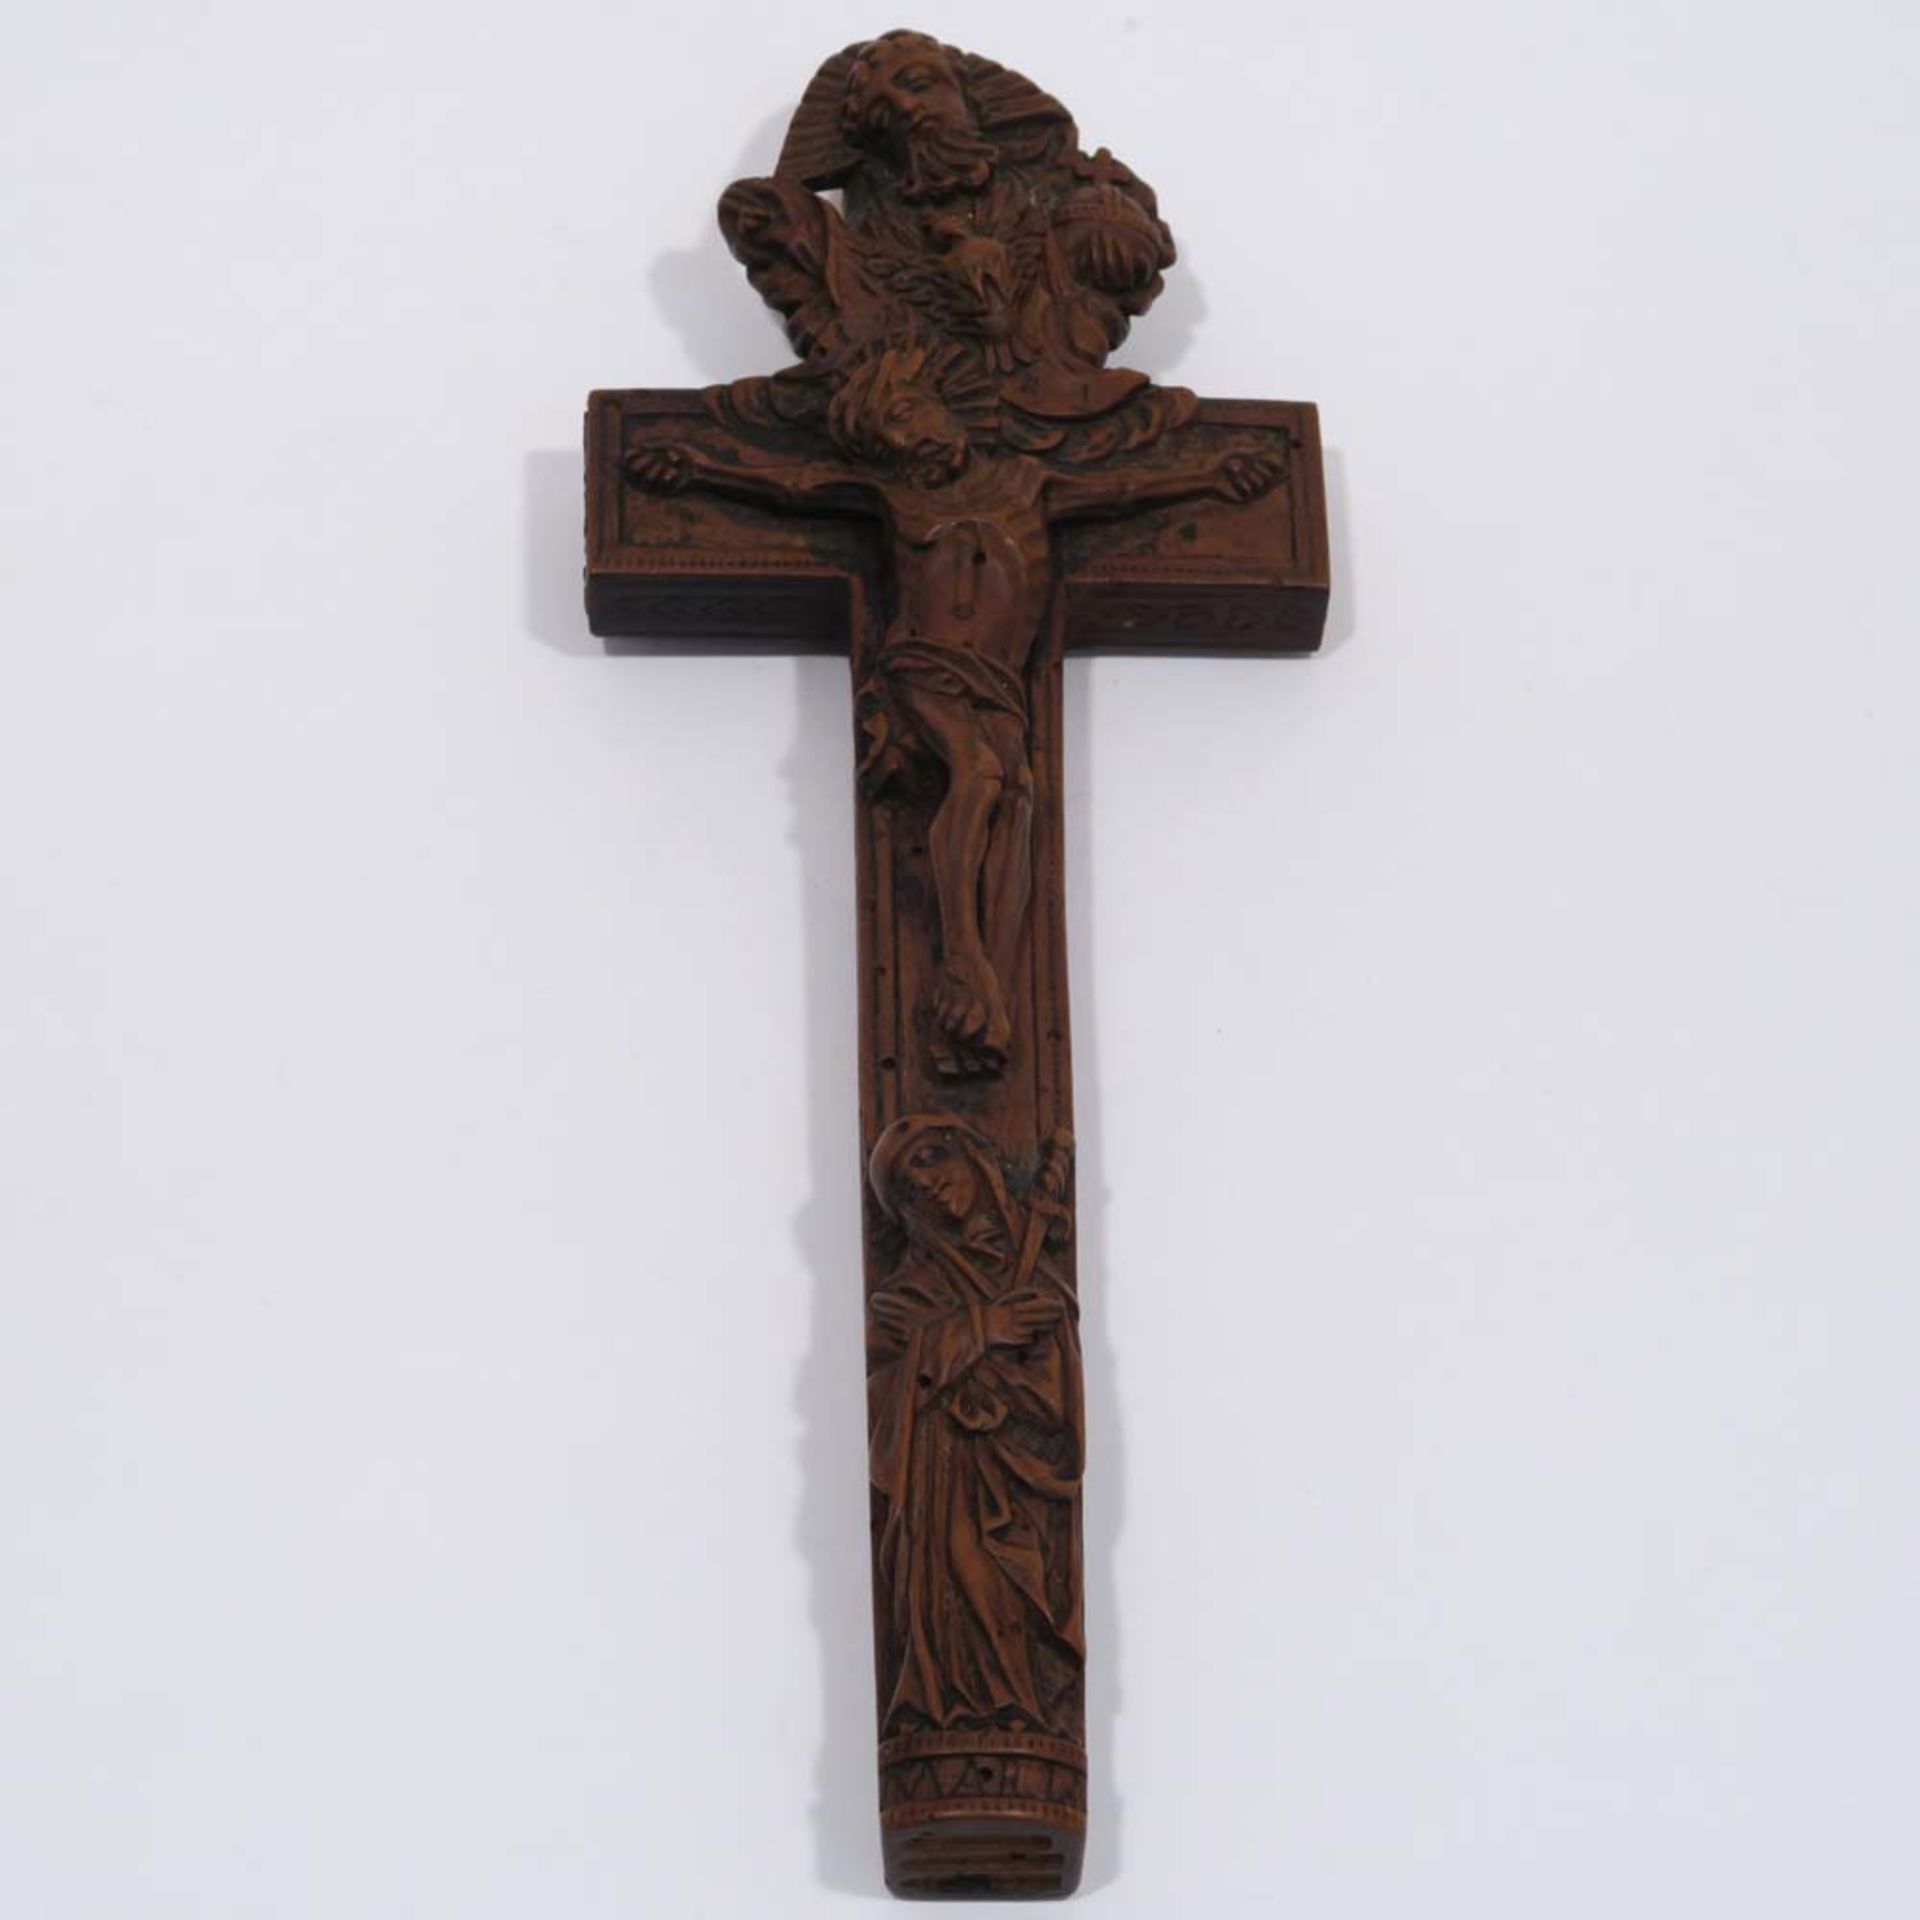 Reliquienkreuz18./19. Jh. Obstholz, geschnitzt. Mit Gottvater, Heiliggeisttaube und schmerzhafter